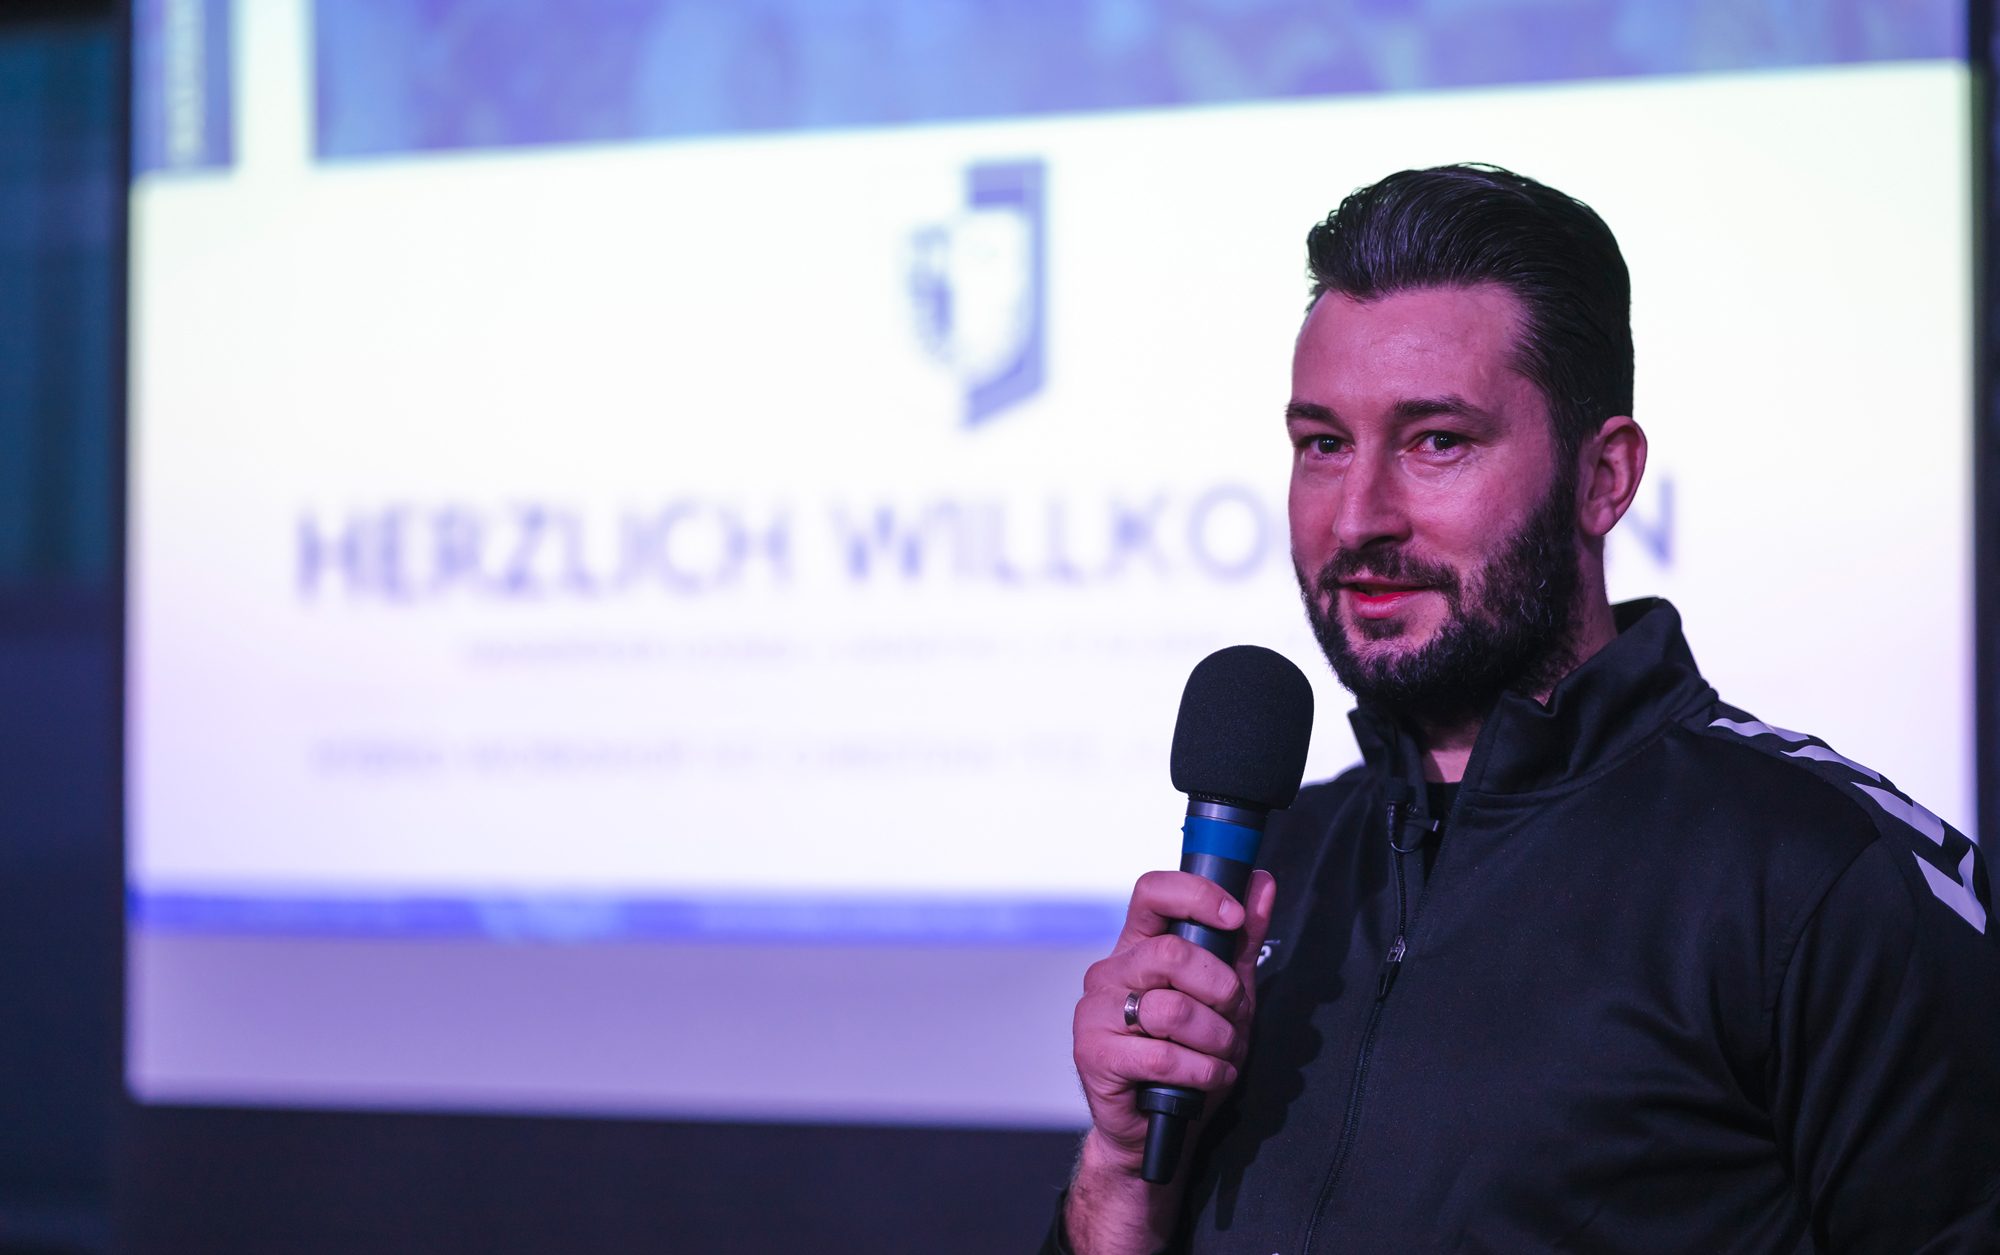 Marius Sowislo ist Leiter des Partnervereinsnetzwerks "Mit Blau-Weiss vereint".